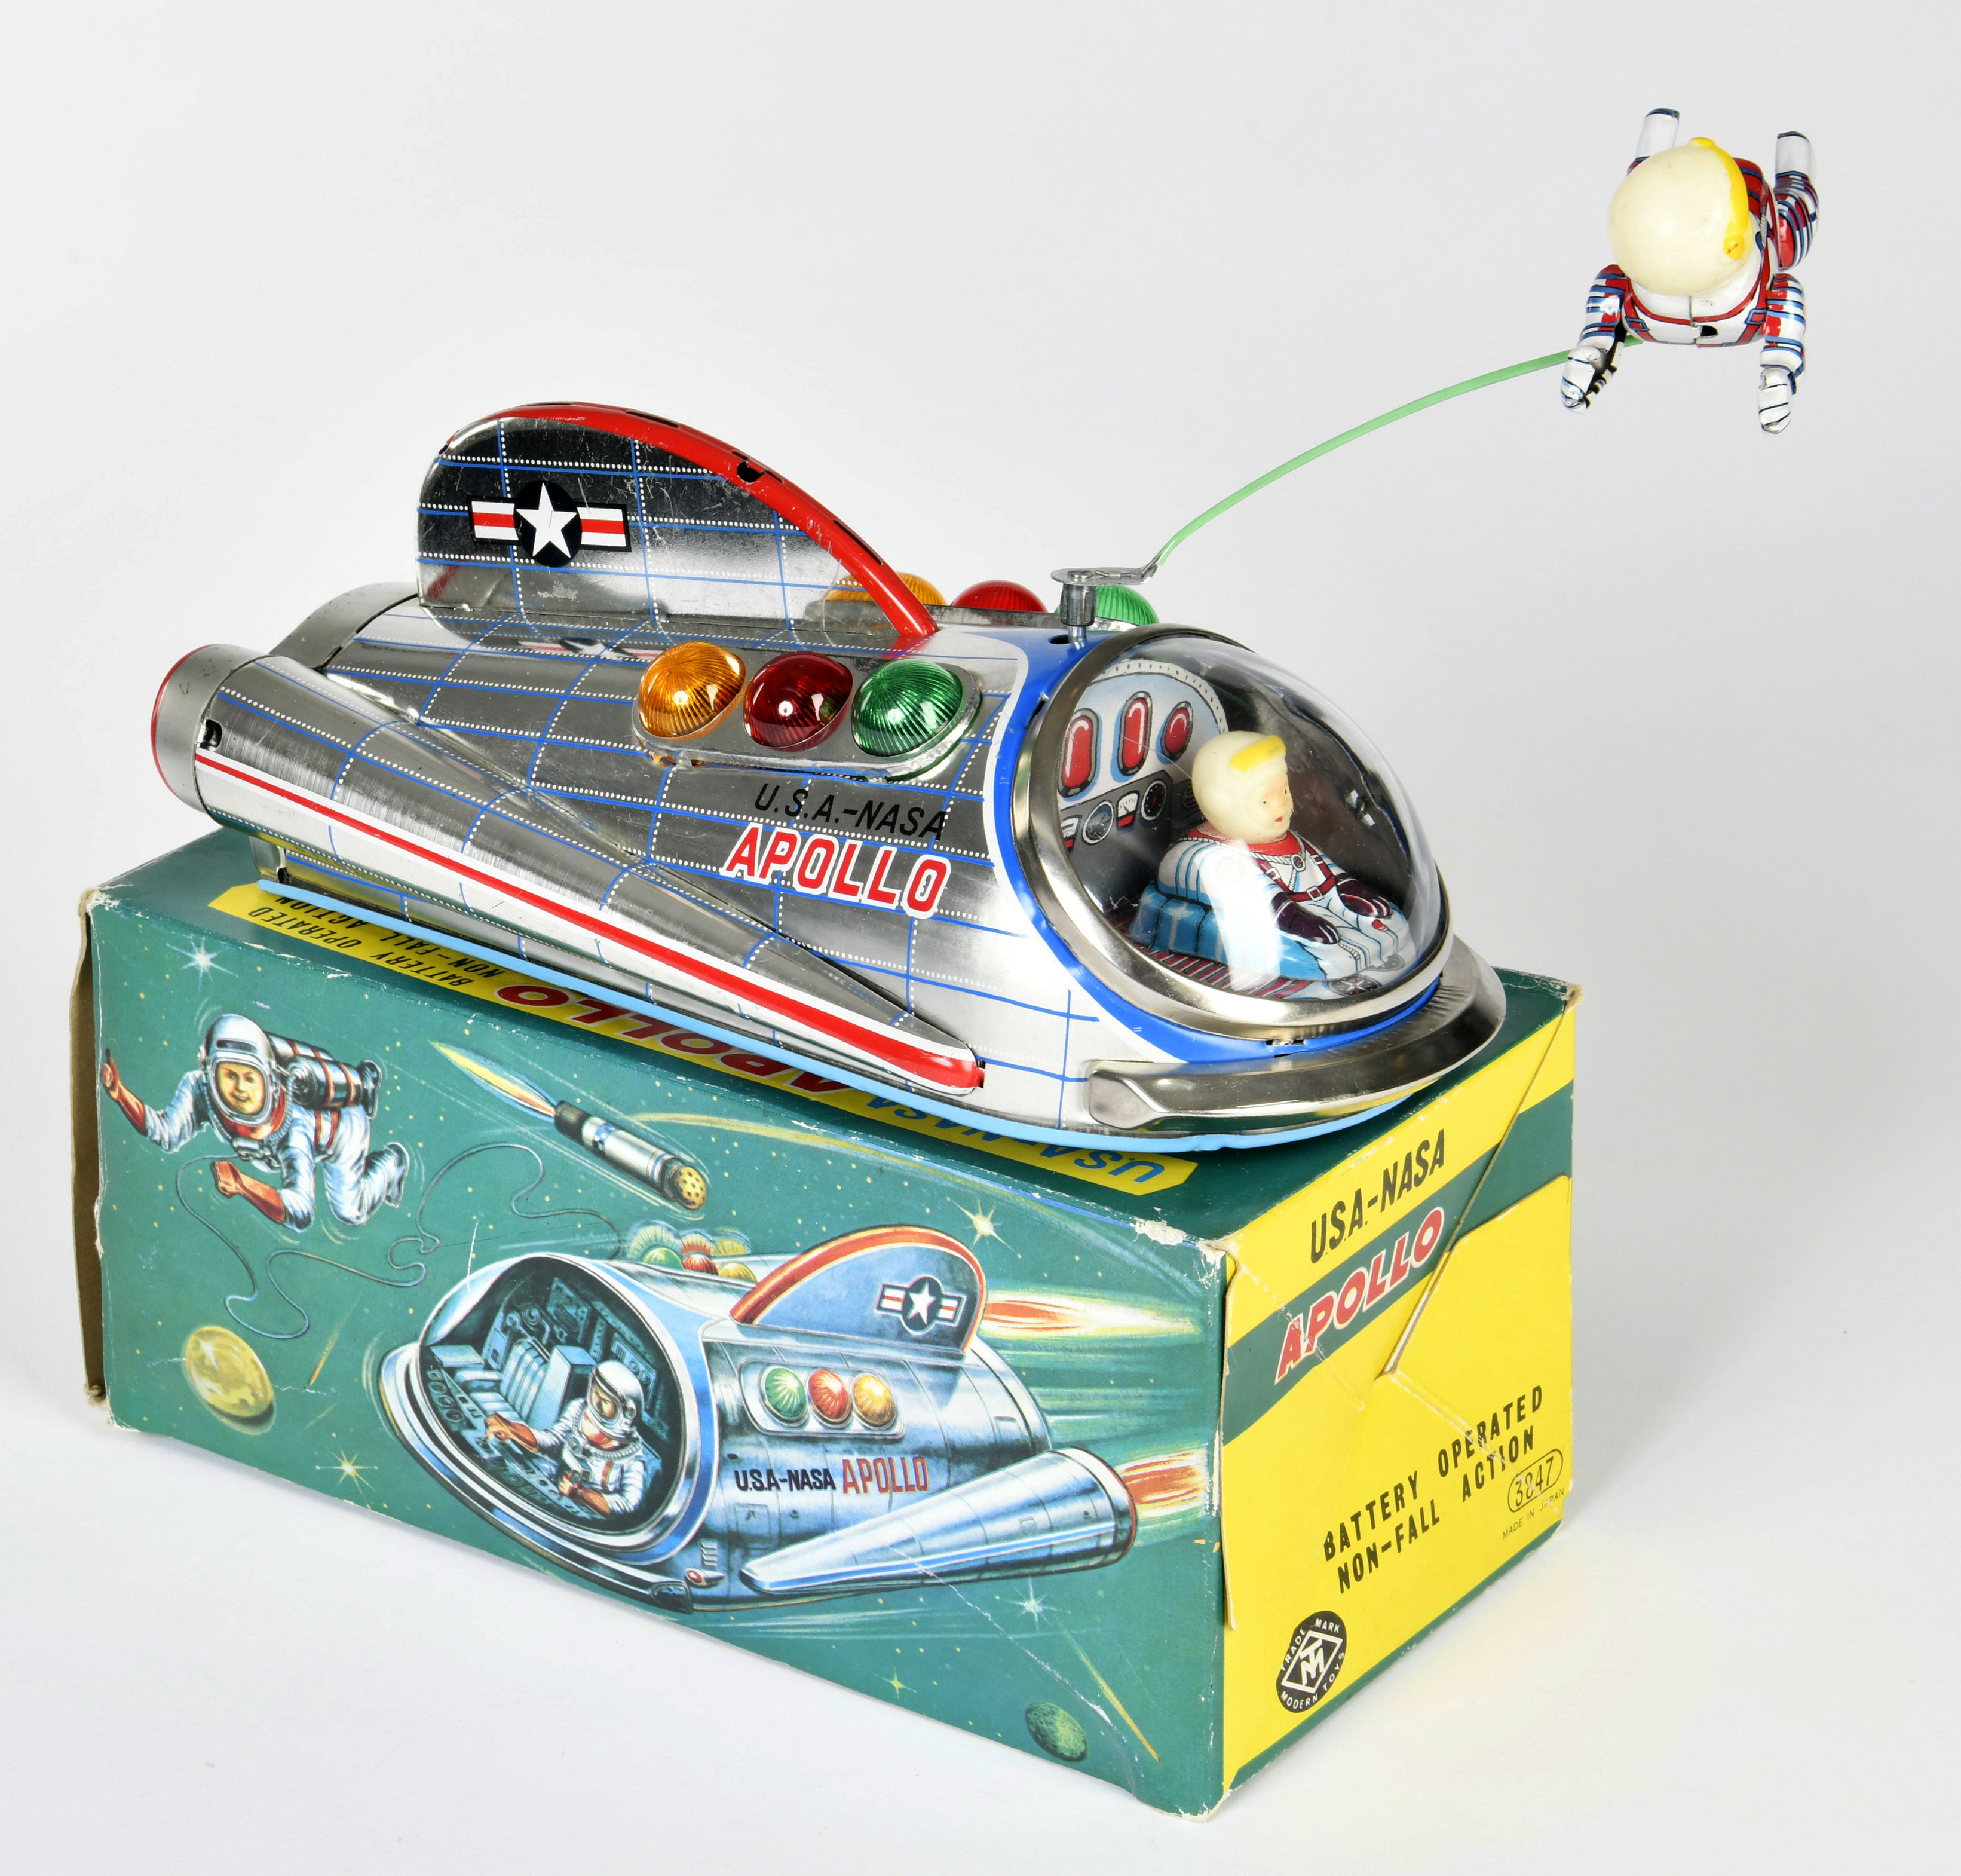 Modern Toys, Nasa Apollo, Japan, 23 cm, tin, function ok, box C 2+, C 1-2